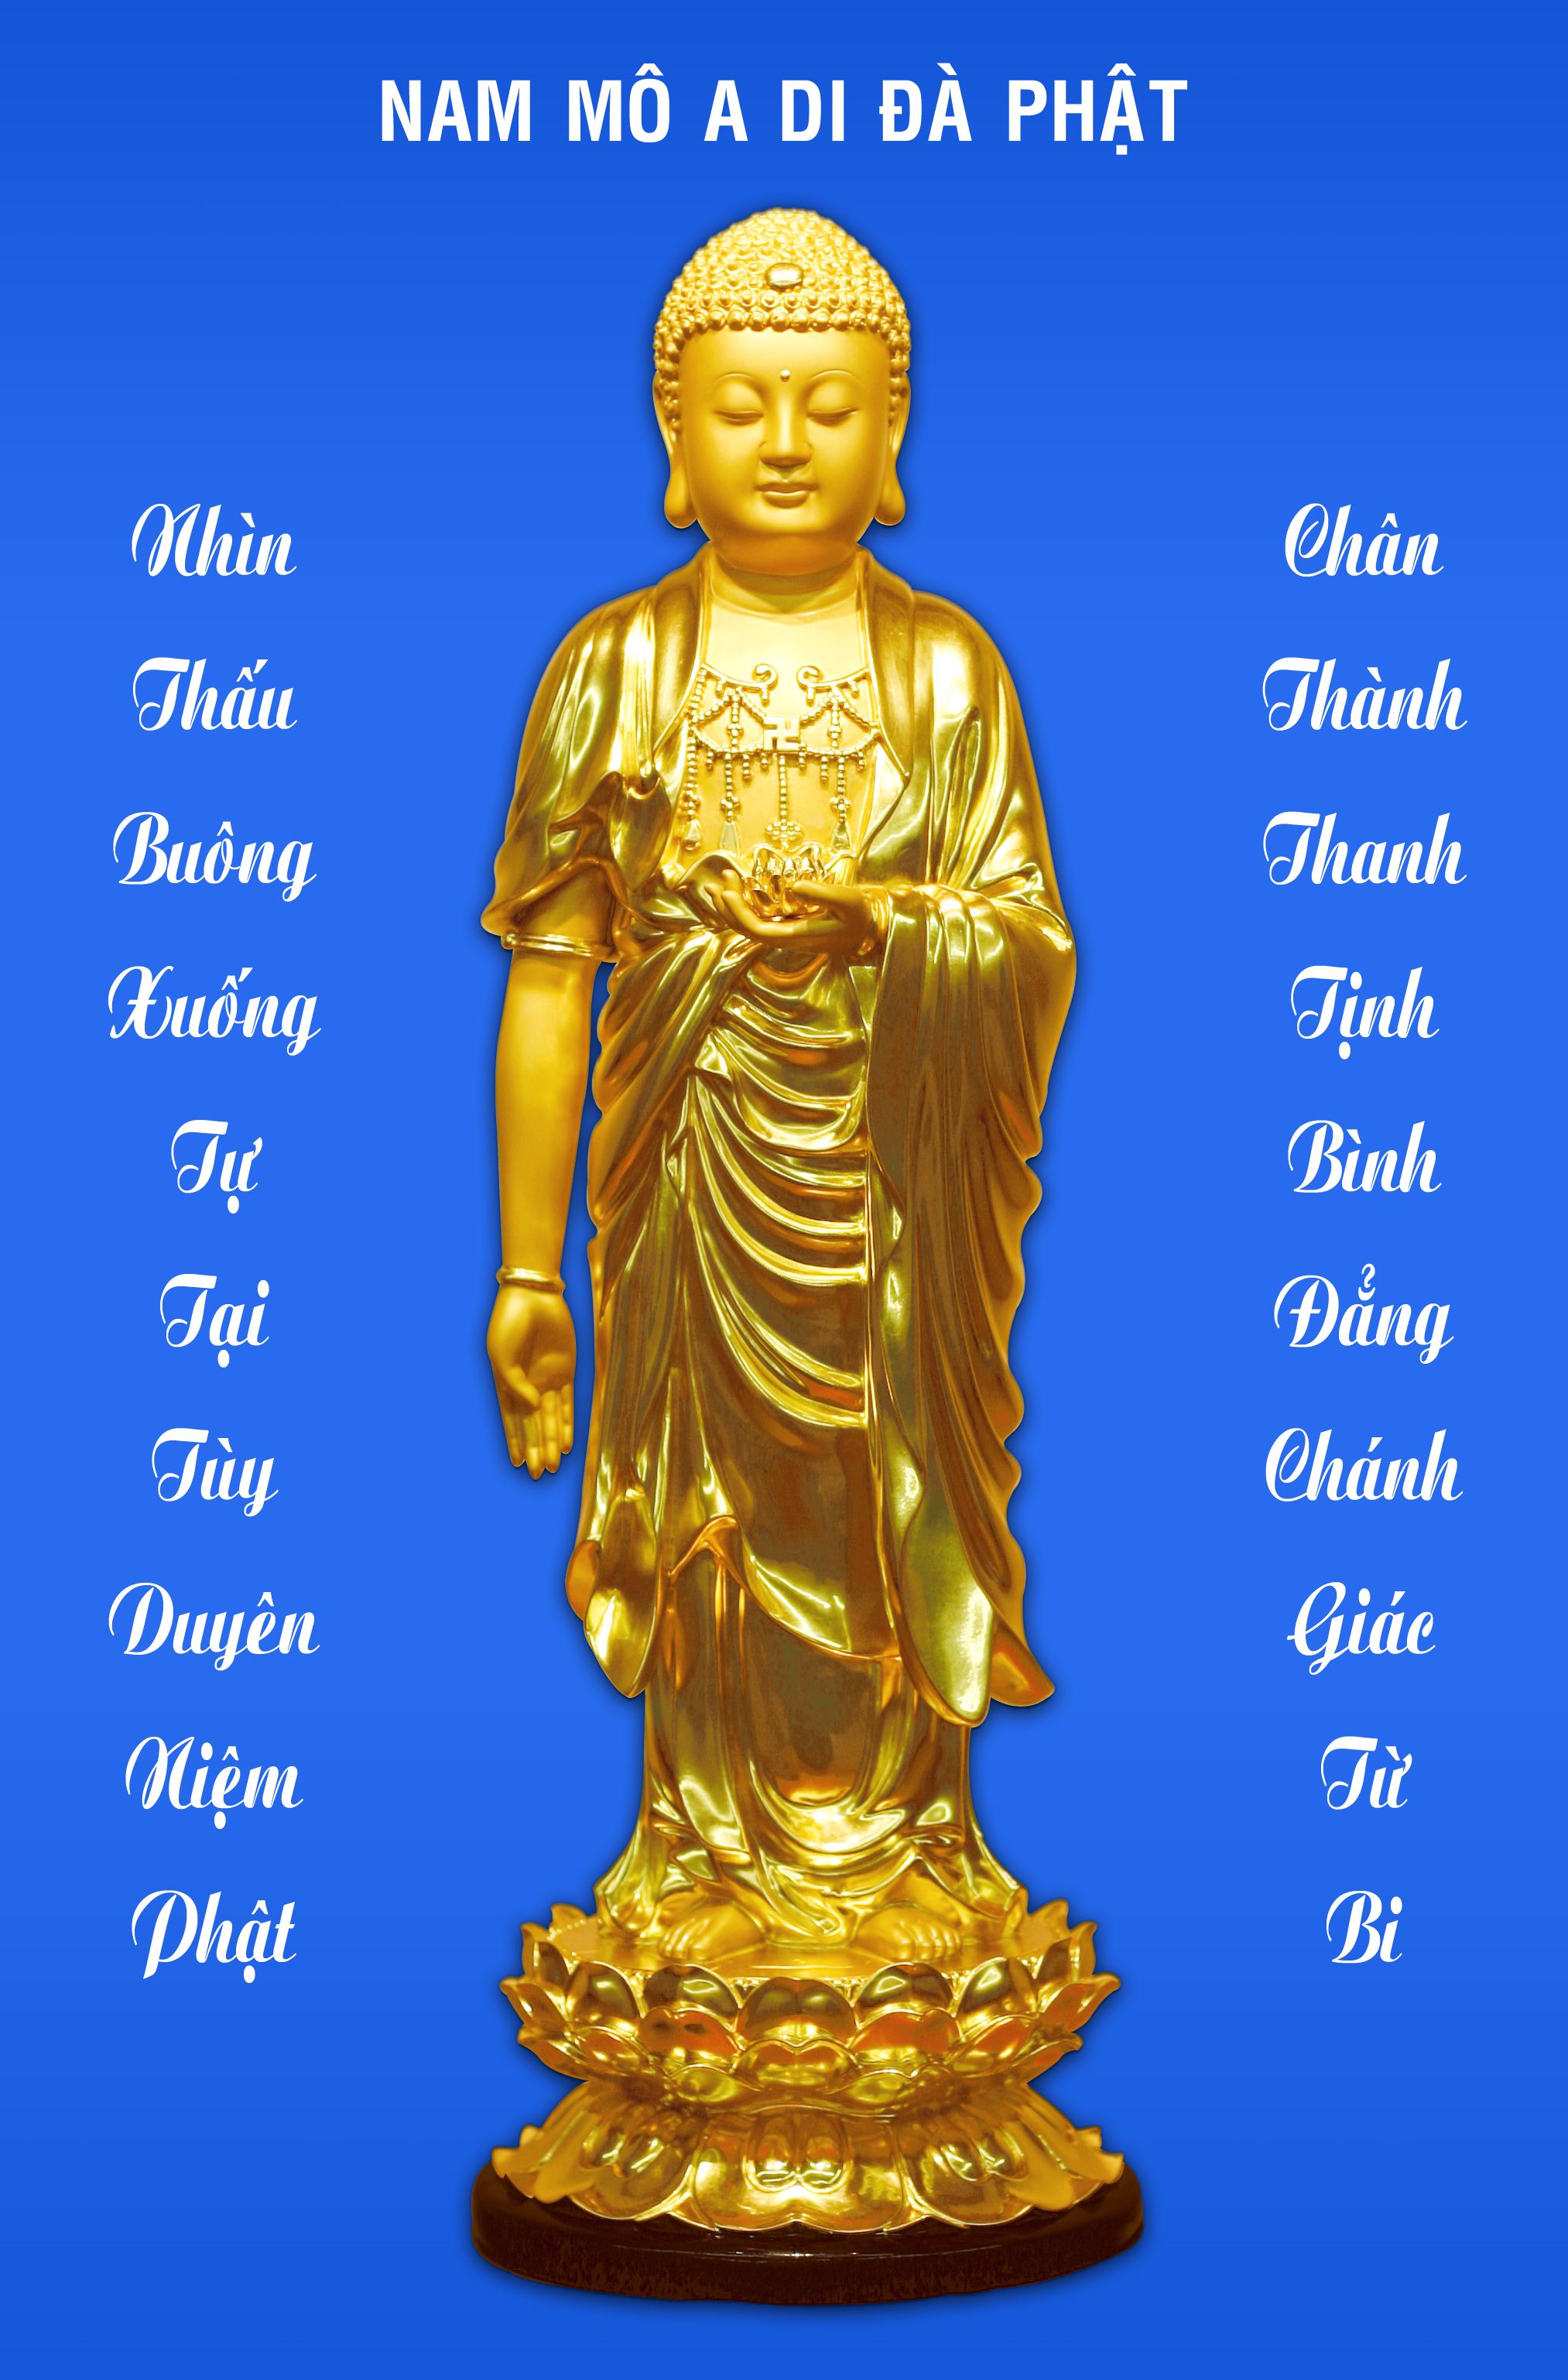 Nam Mô A Di Đà Phật là lời nguyện cầu đến ngài Phật, mang đến cho bạn niềm an vui và sự bình yên trong tâm hồn. Bức ảnh này chứa đựng sức mạnh tâm linh và giúp bạn tìm lại sự cân bằng trong cuộc sống. Hãy cùng chiêm ngưỡng tác phẩm nghệ thuật này để tìm lại sự thanh thản.